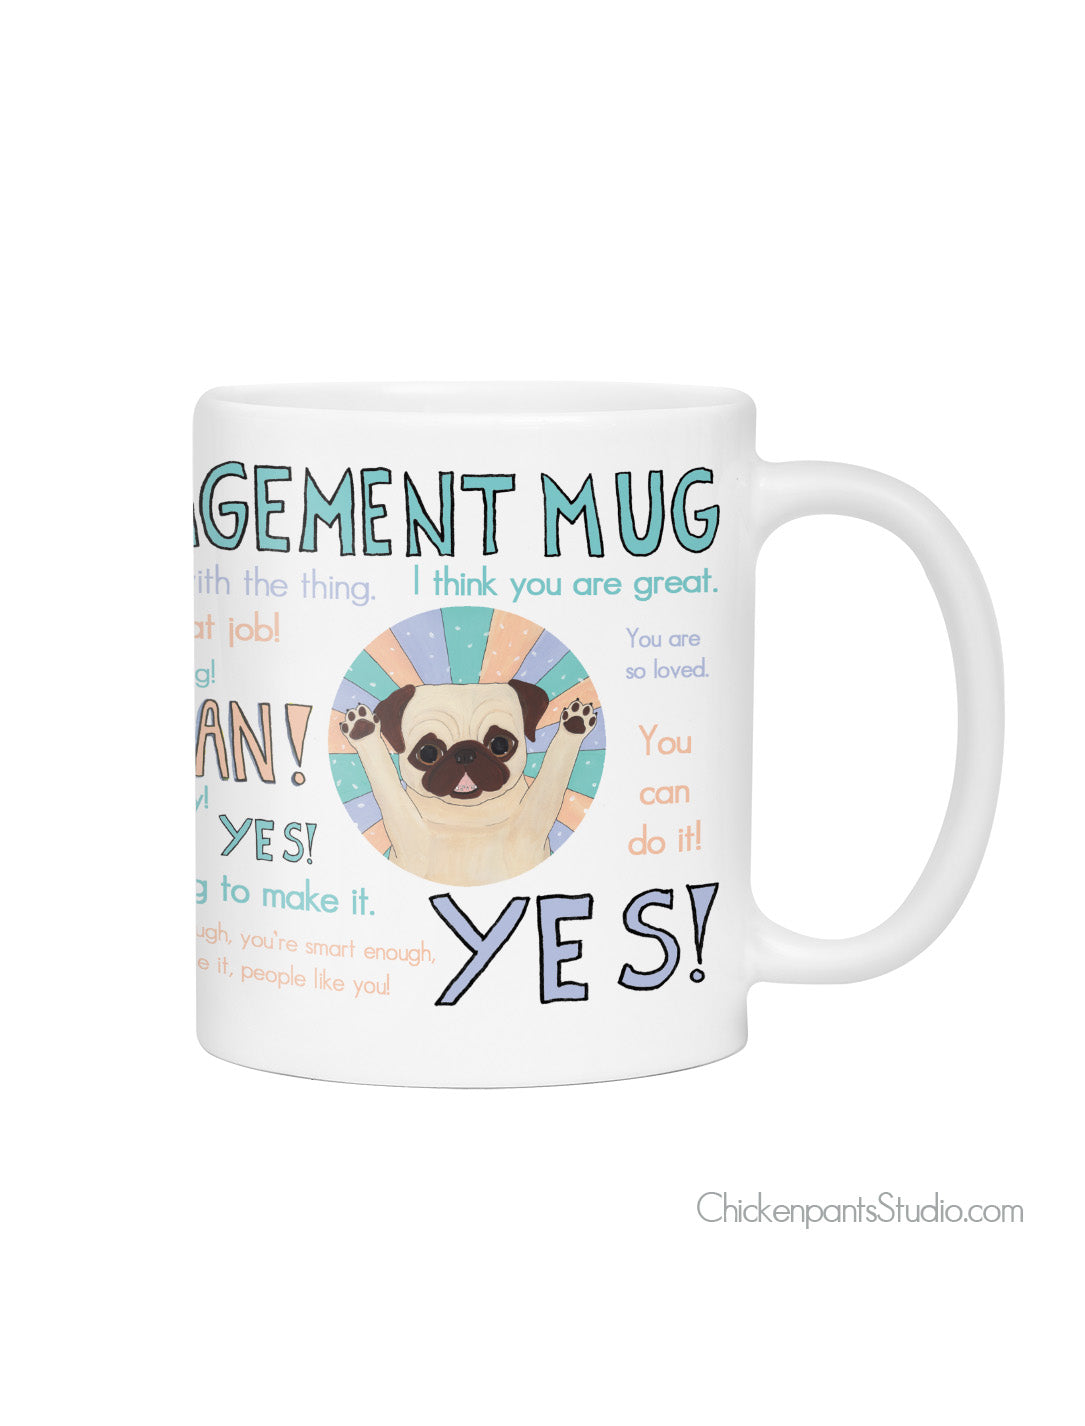 General Encouragement Pug Mug